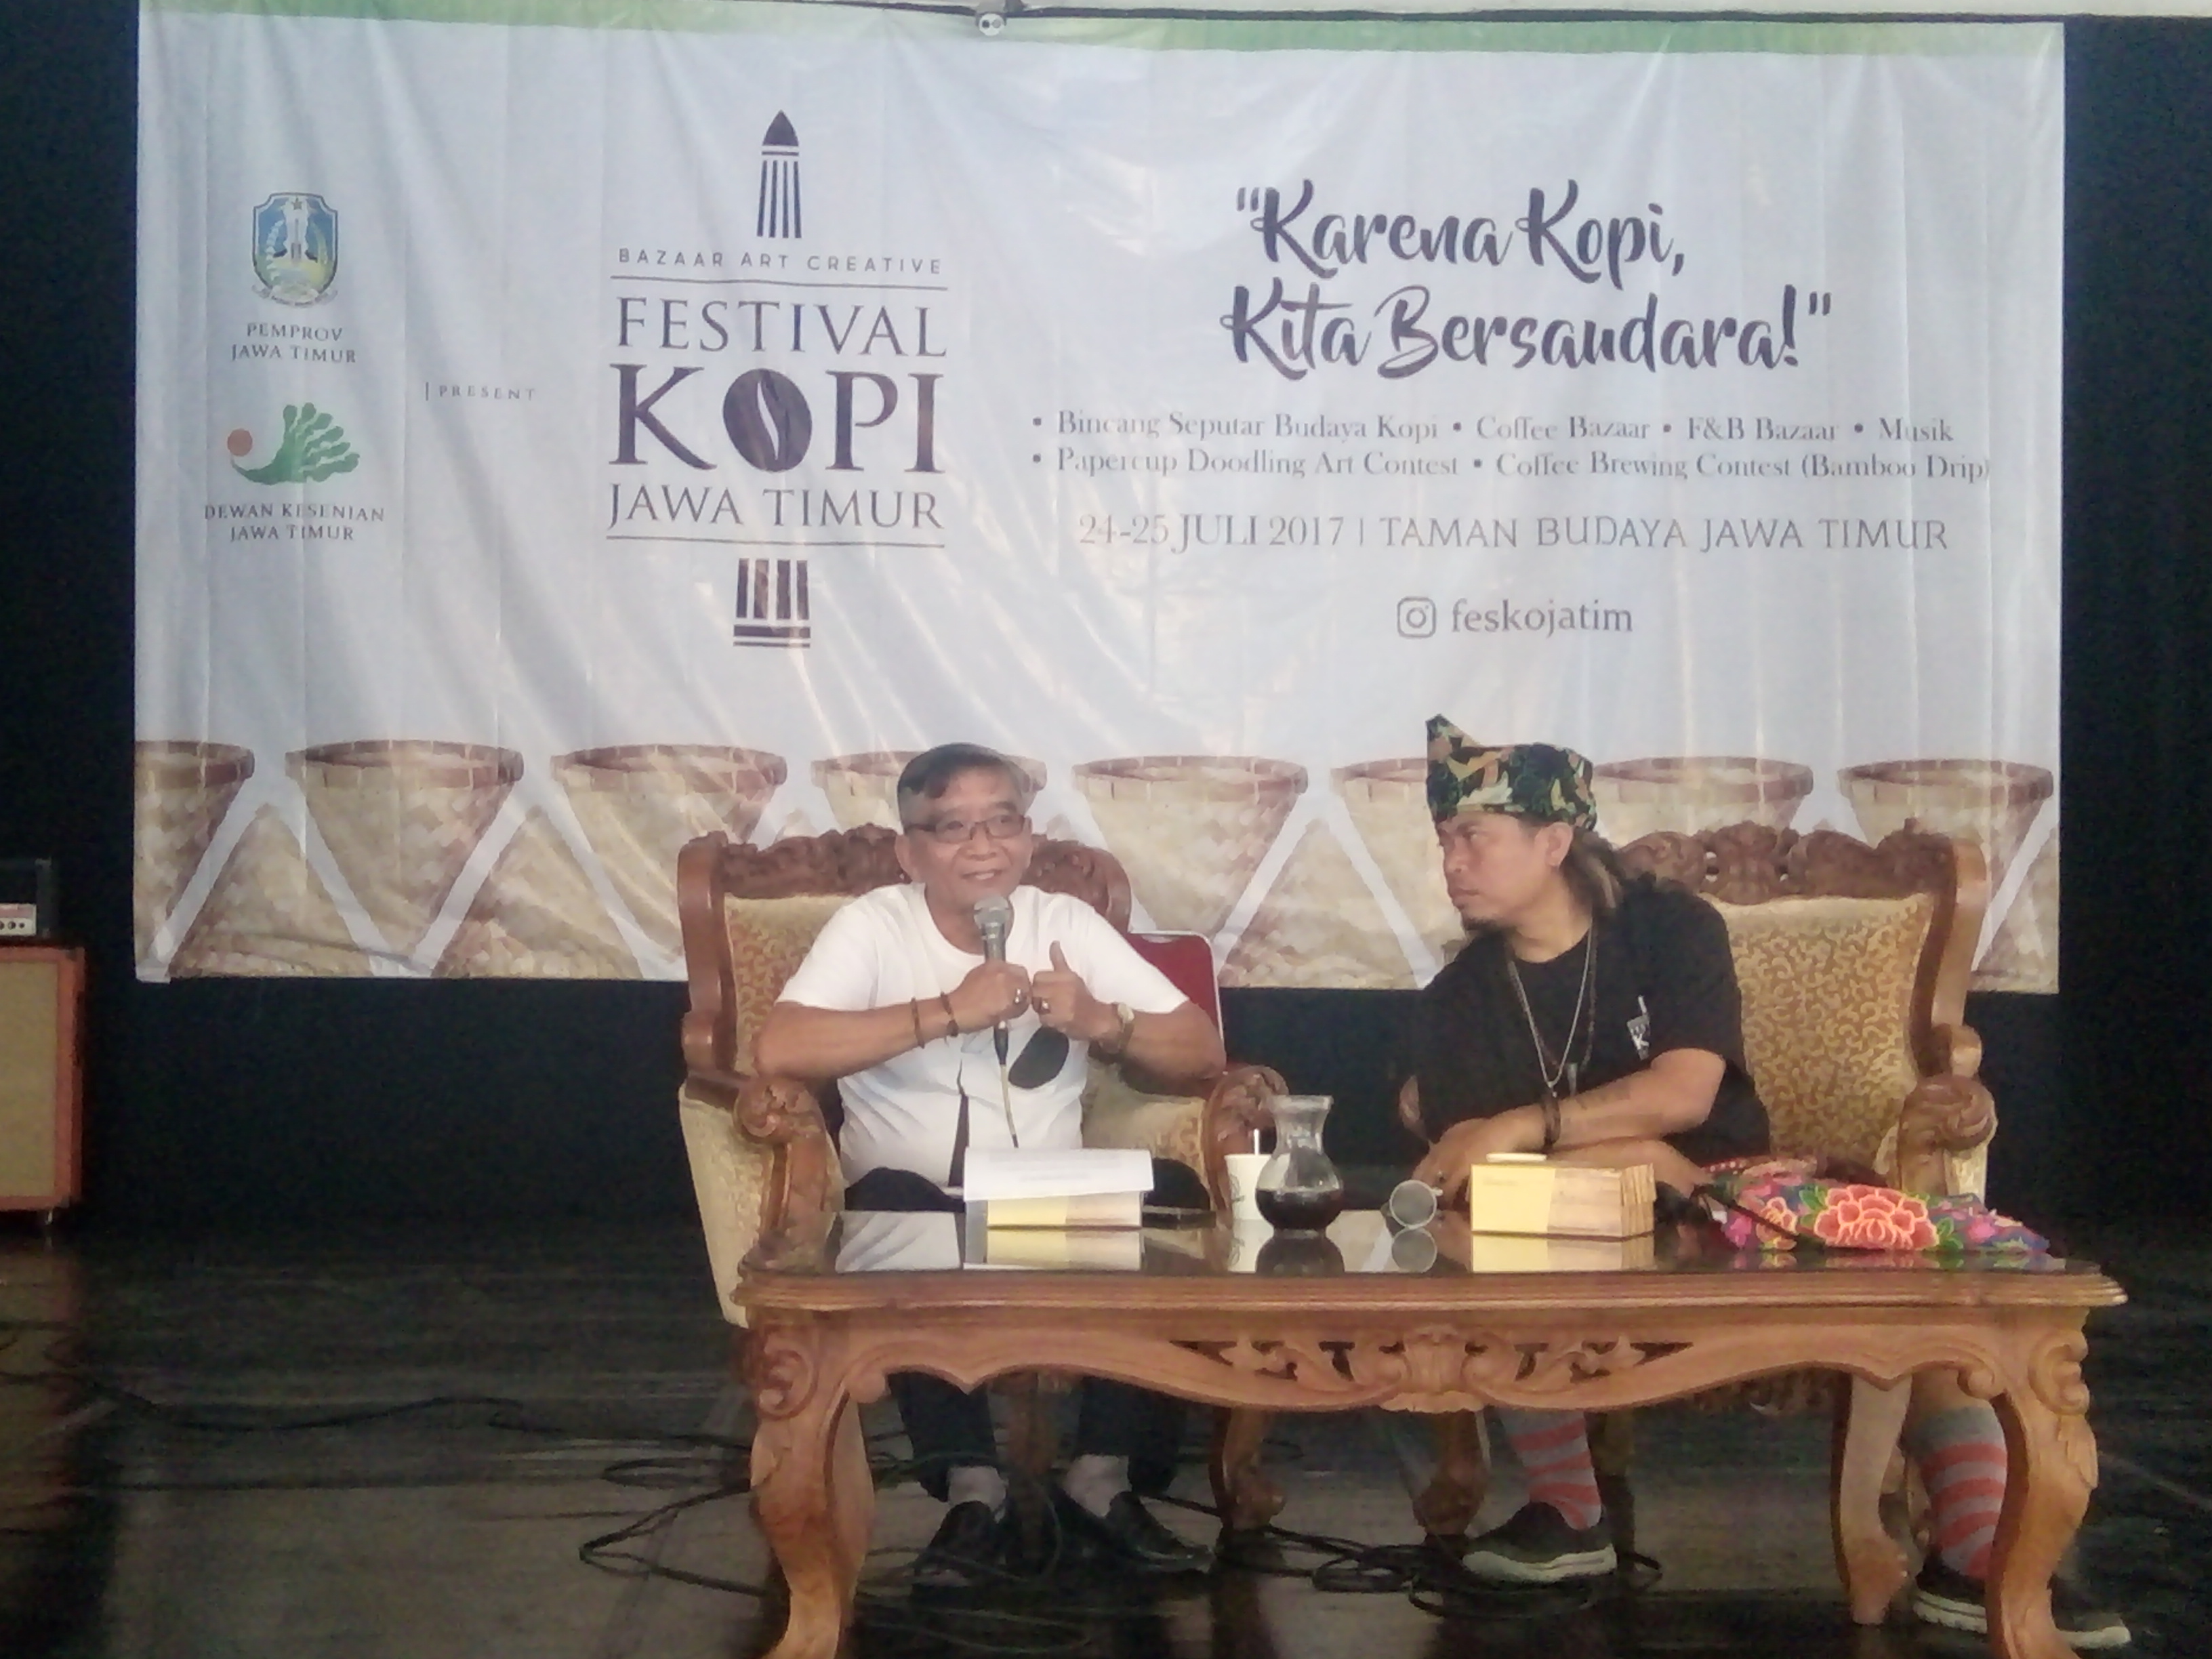 Bambang Sriono (kiri) dalam sesi seminar perkopian di Dewan Kesenian Jawa Timur. foto:widikamidi